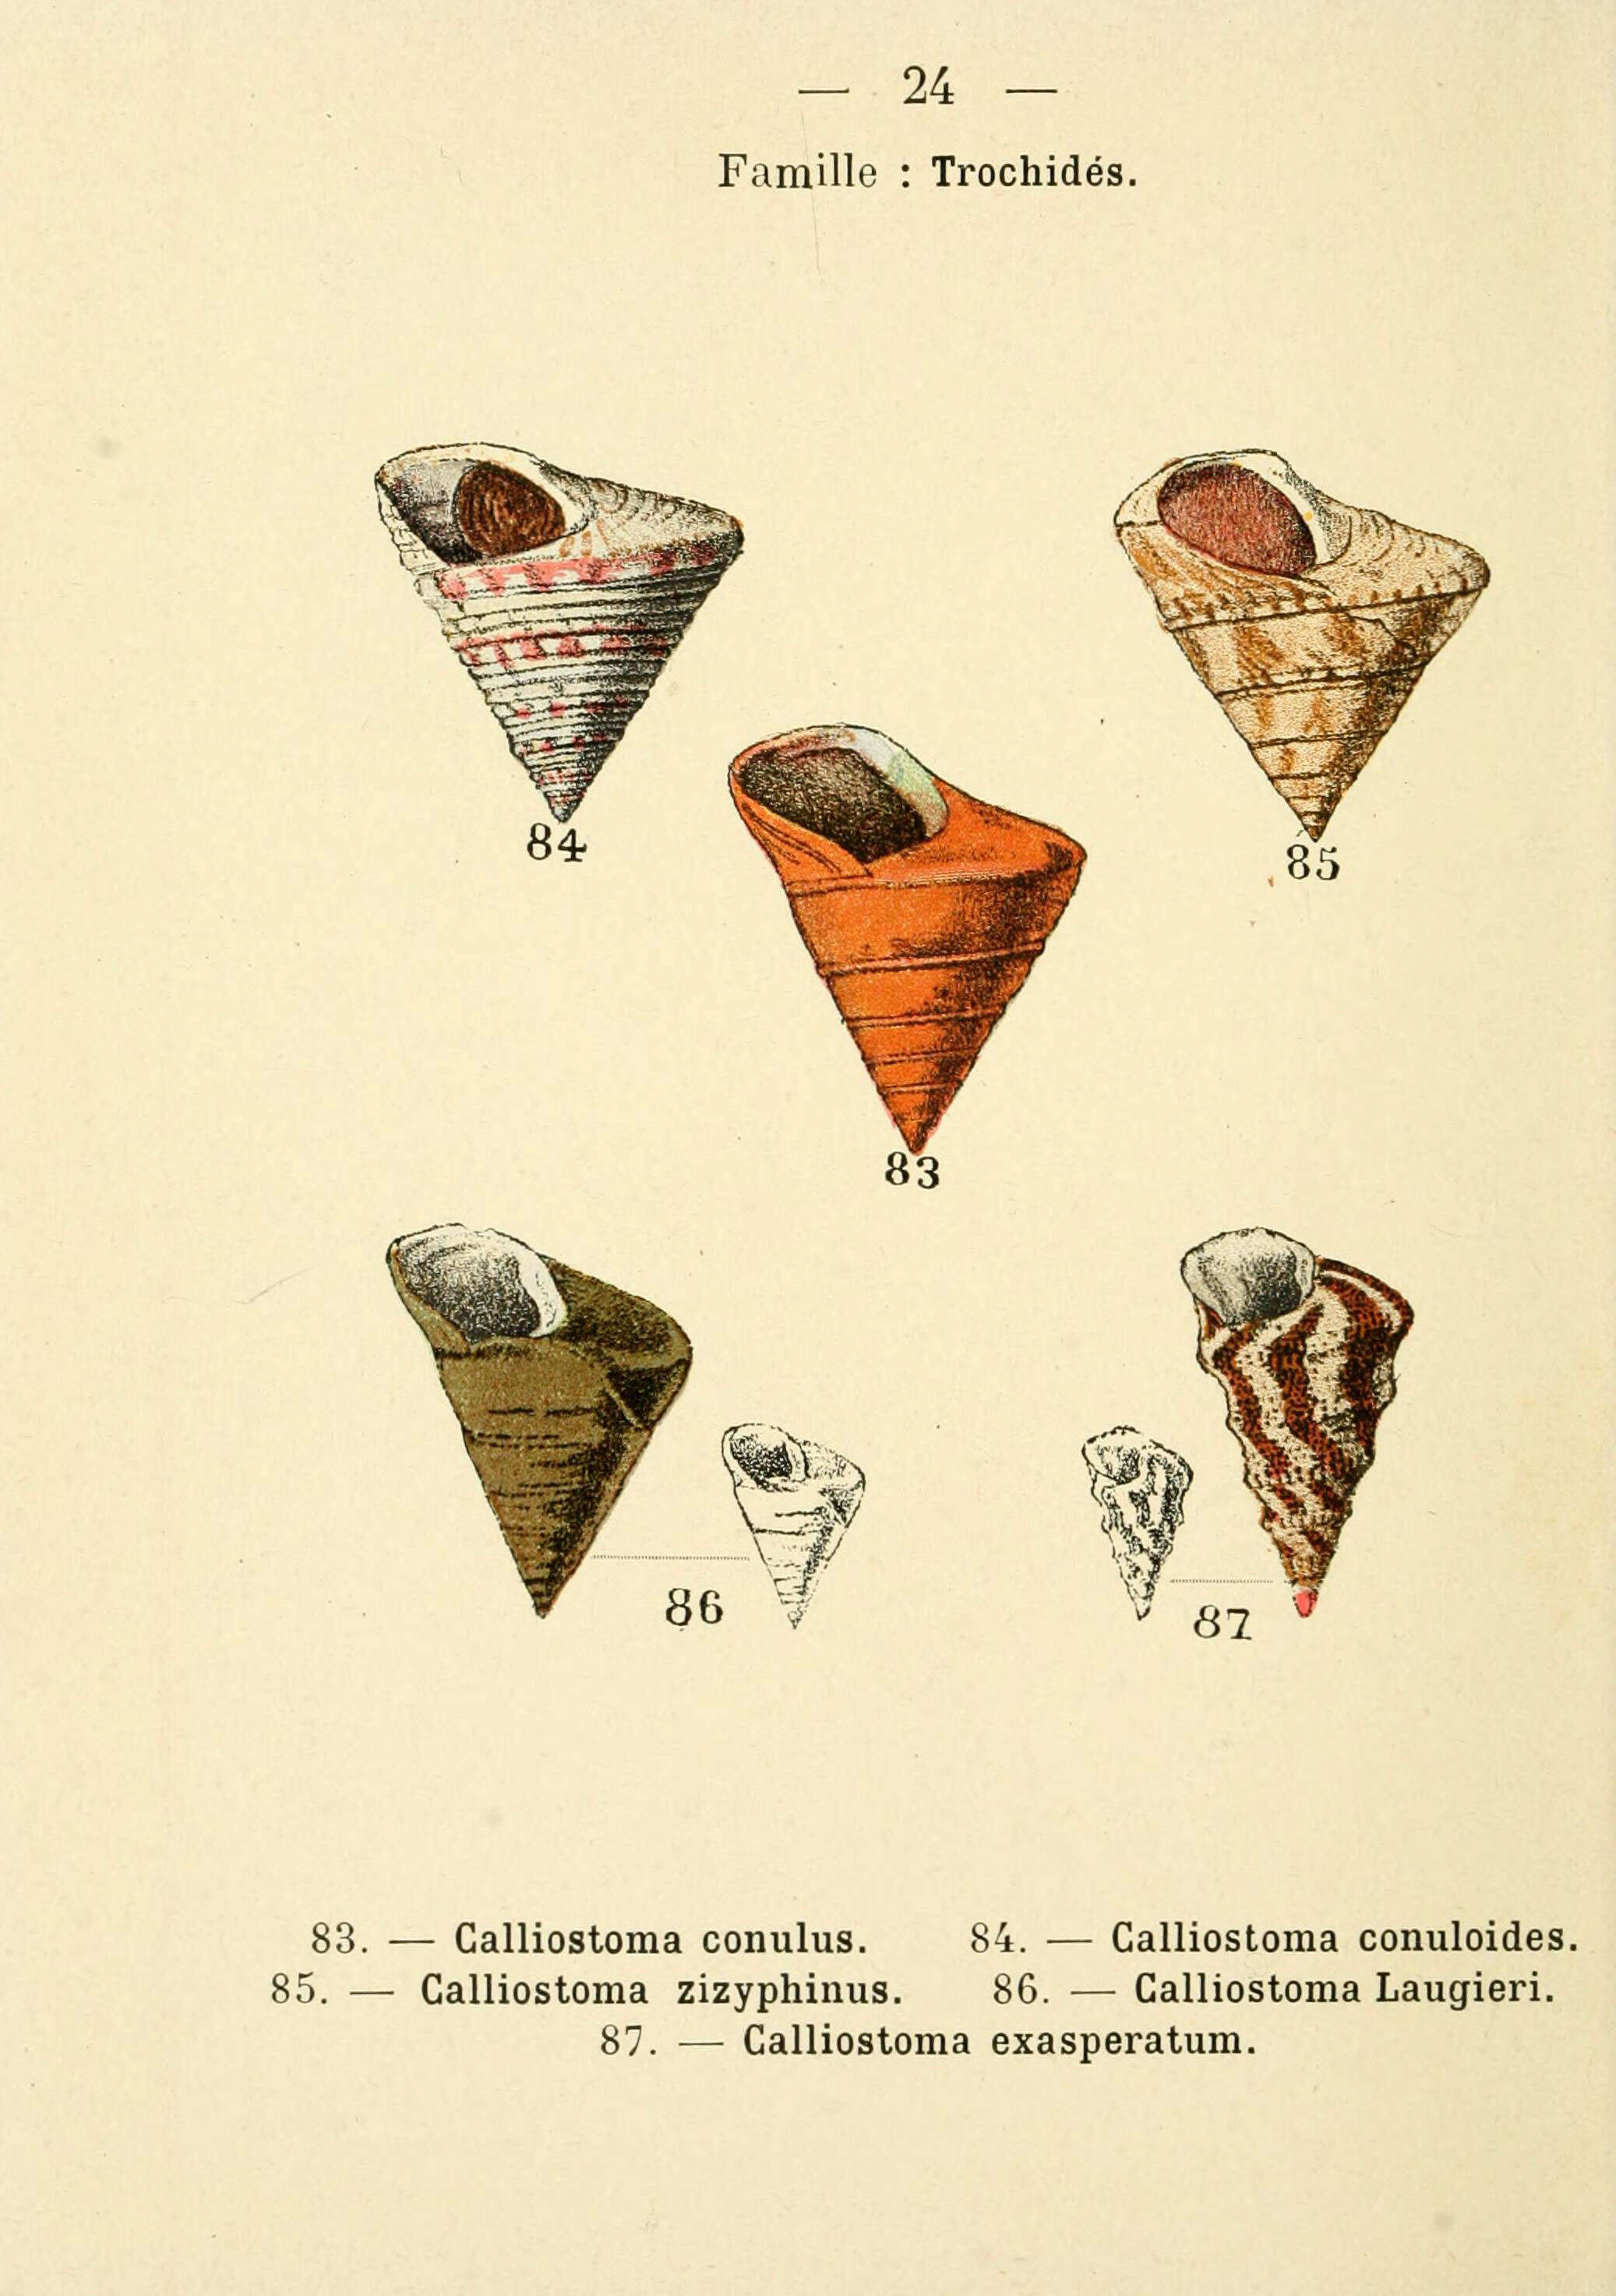 Image de Calliostoma conulus (Linnaeus 1758)